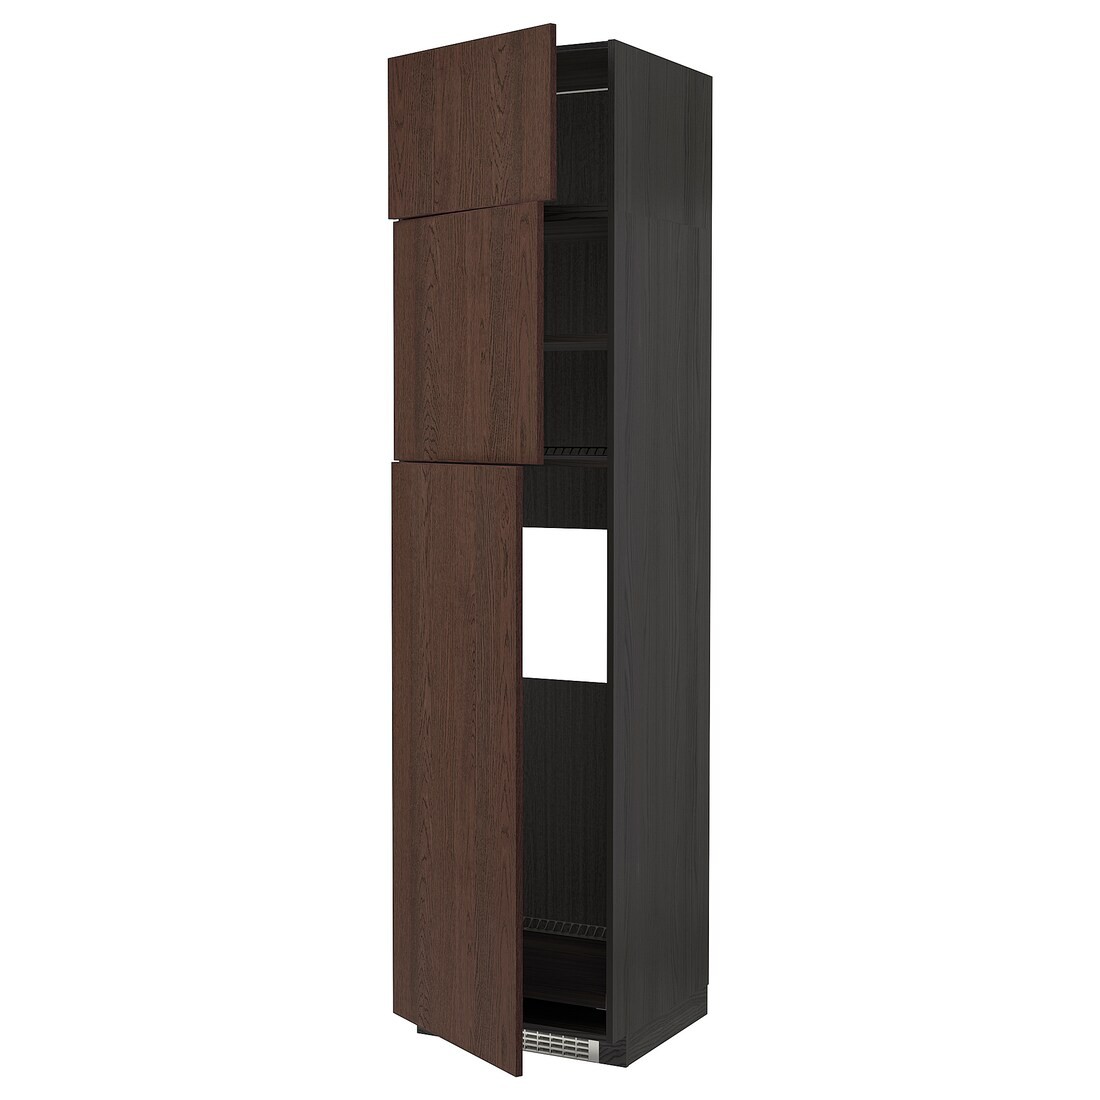 METOD МЕТОД Высокий шкаф для холодильника с 3 дверями, черный / Sinarp коричневый, 60x60x240 см